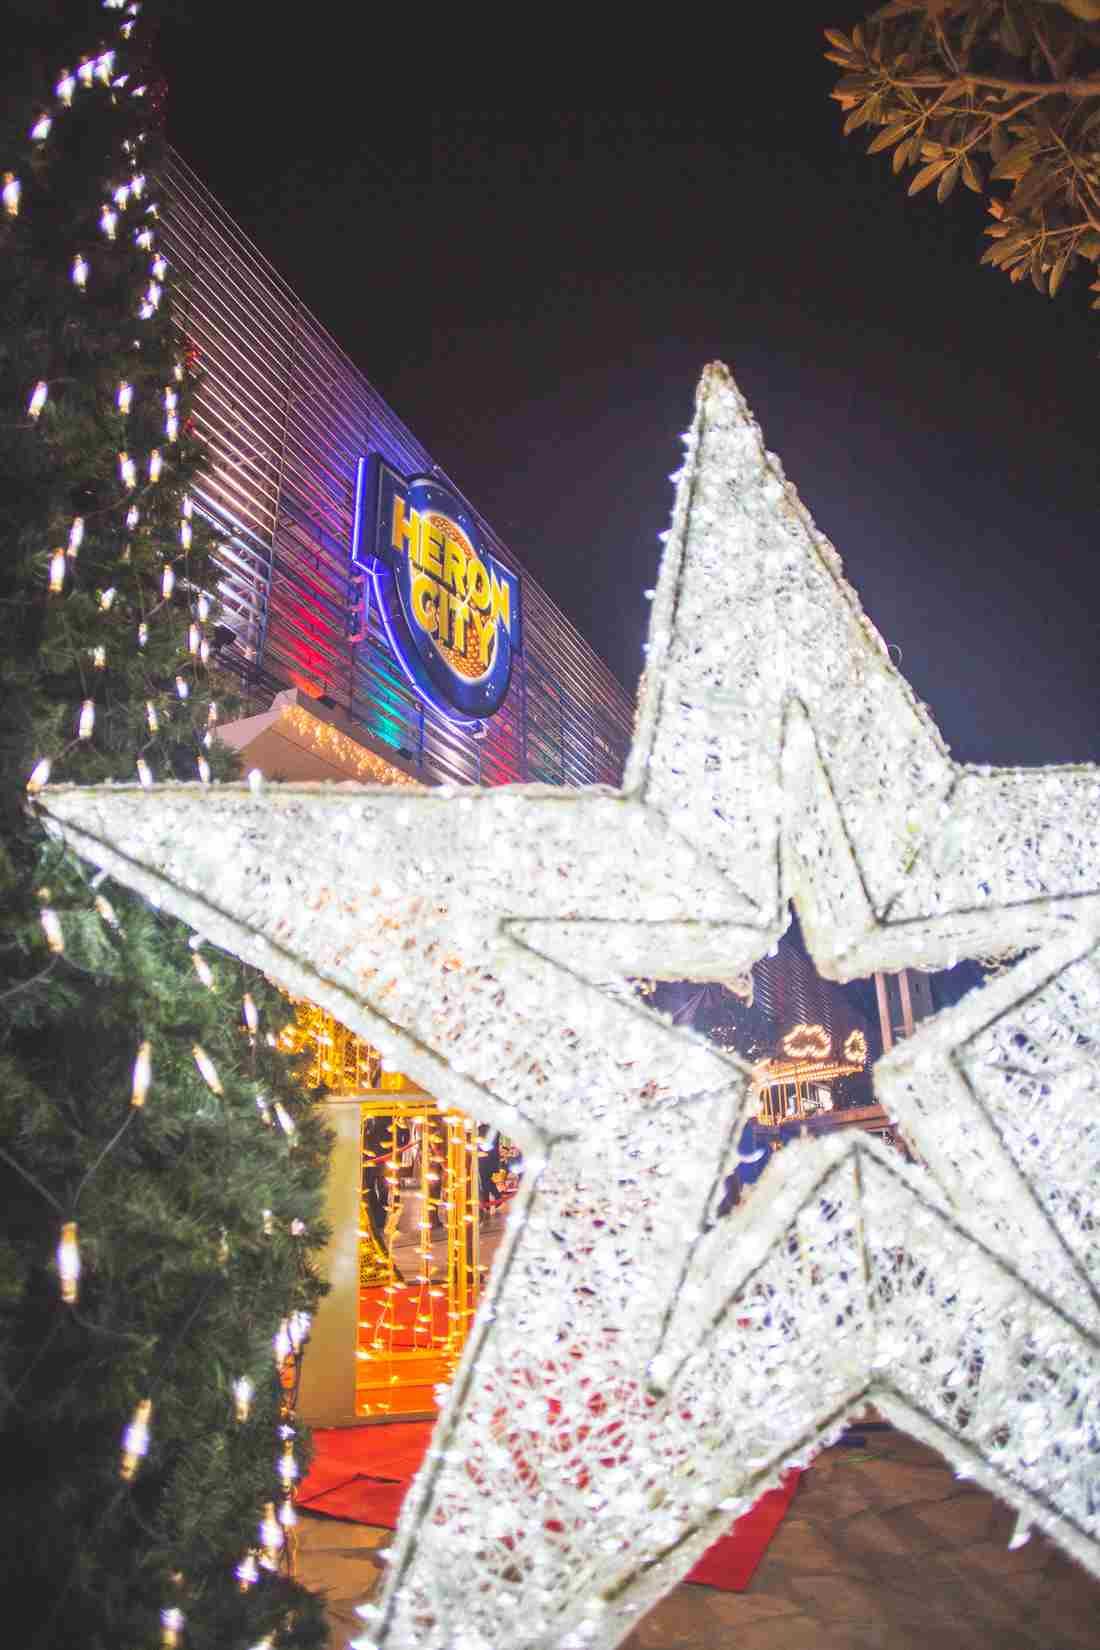 Una bonita decoración y ambiente navideño en Heron City.